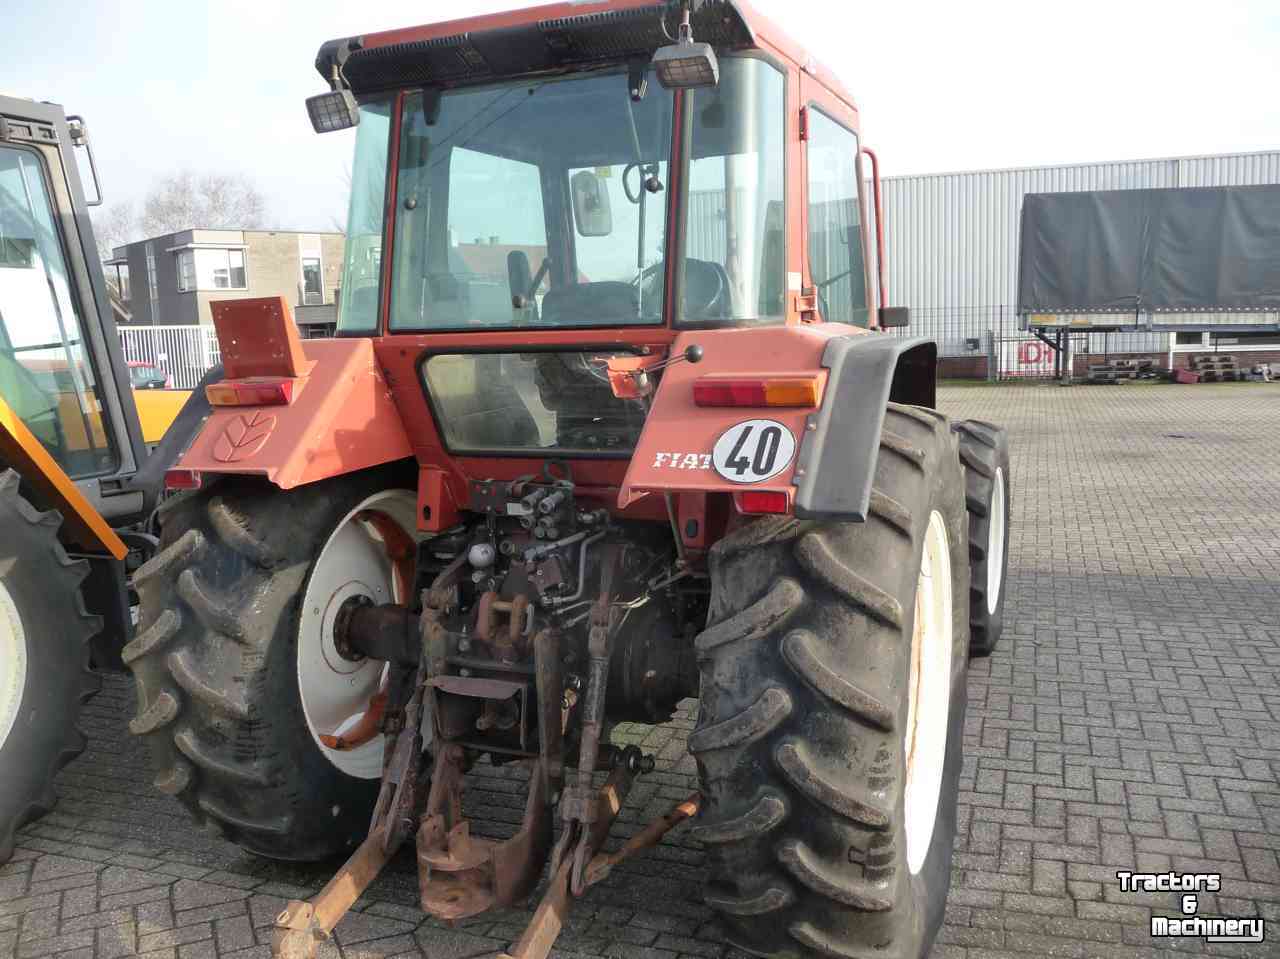 Tractors Fiat f 115